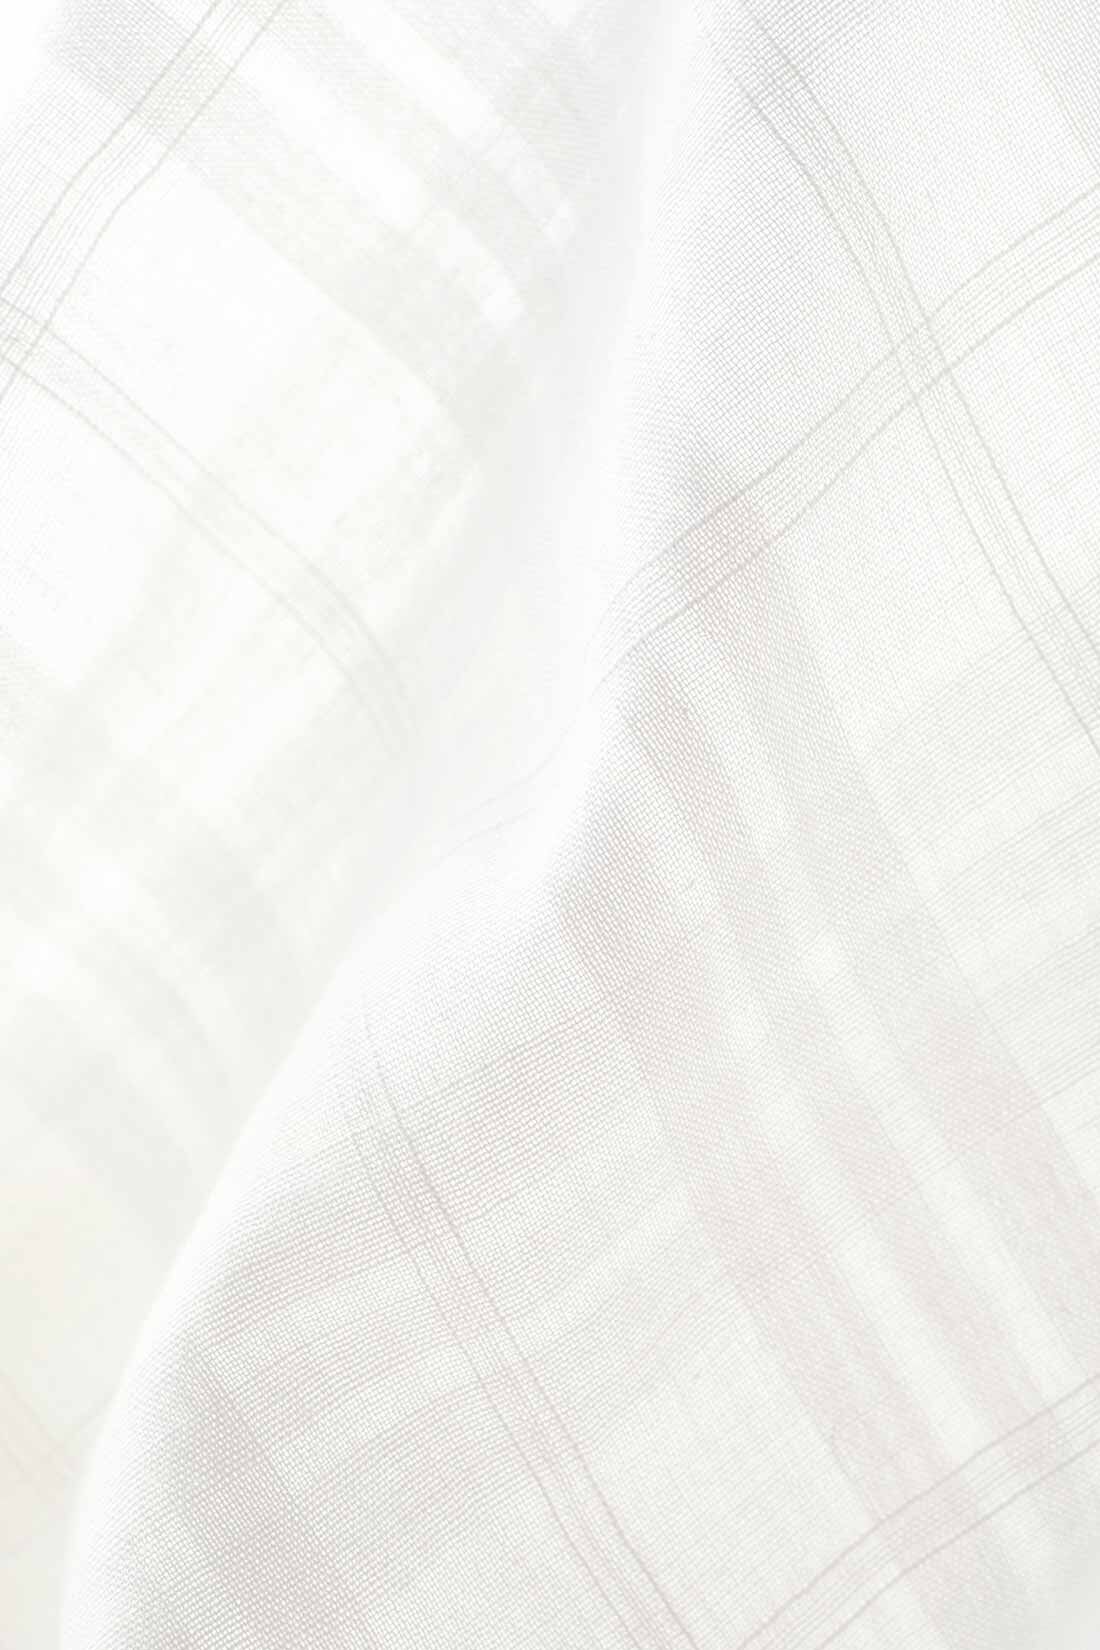 THREE FIFTY STANDARD|THREE FIFTY STANDARD 金子敦子さんと作った オーガニックコットンブラウス〈オフホワイト〉|オーガニックコットン糸を使用し、日本国内で織り上げた格子柄の生地。透け感を楽しみながら、天然素材特有のやさしい肌ざわりを感じられます。